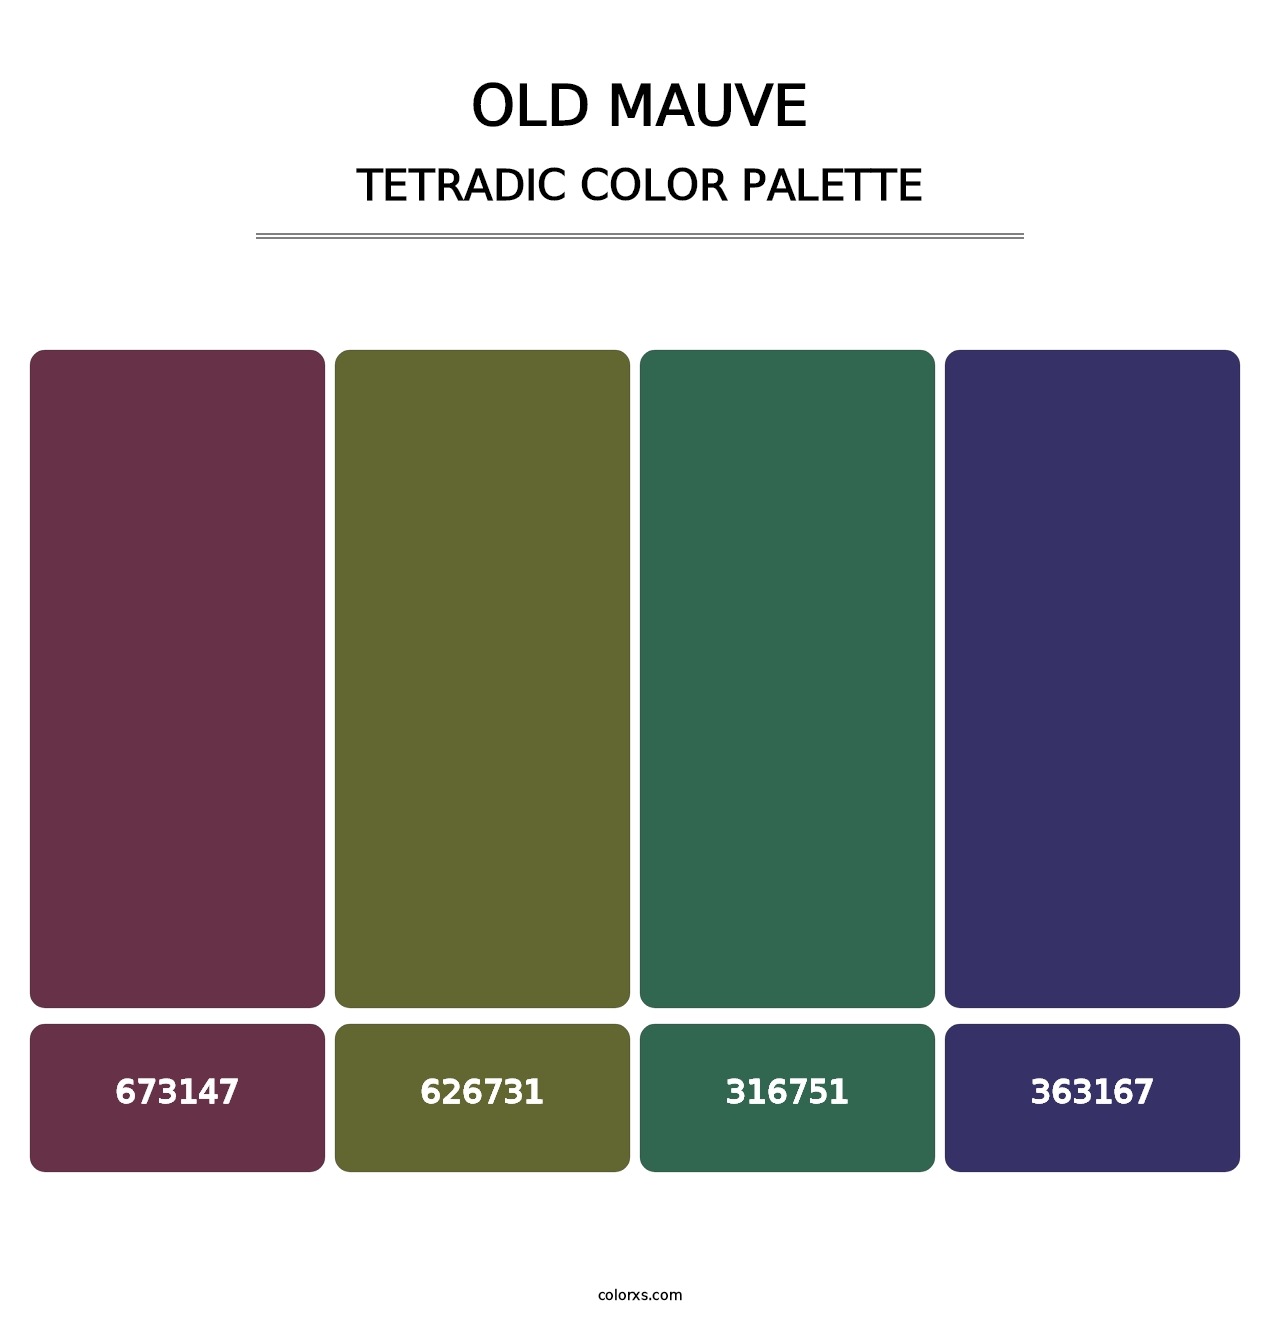 Old Mauve - Tetradic Color Palette